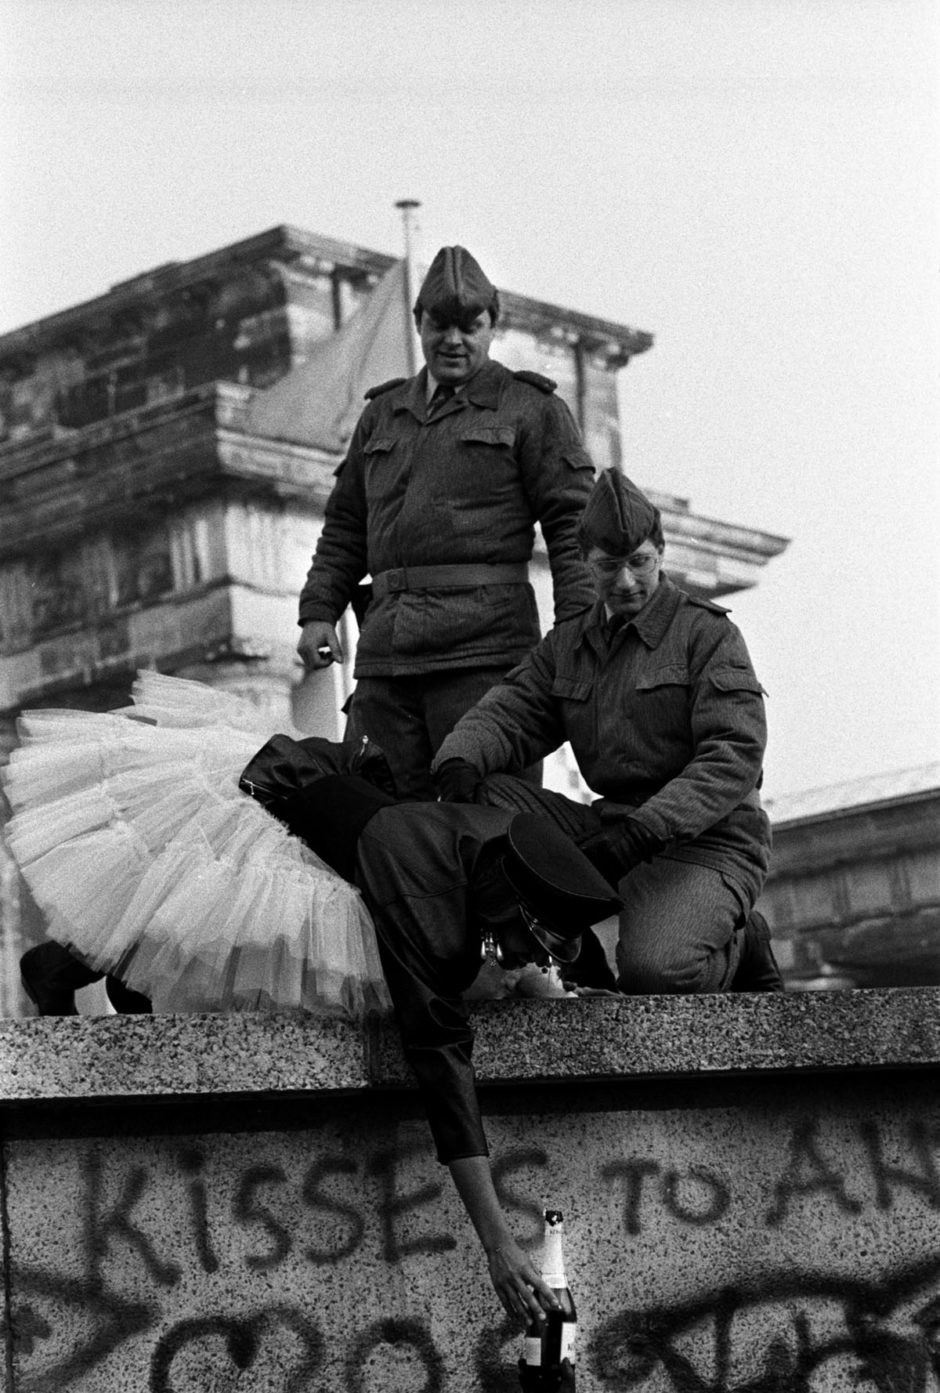 © Stanley Greene - "Kisses to all" - Mur de Berlin, Novembre 1989